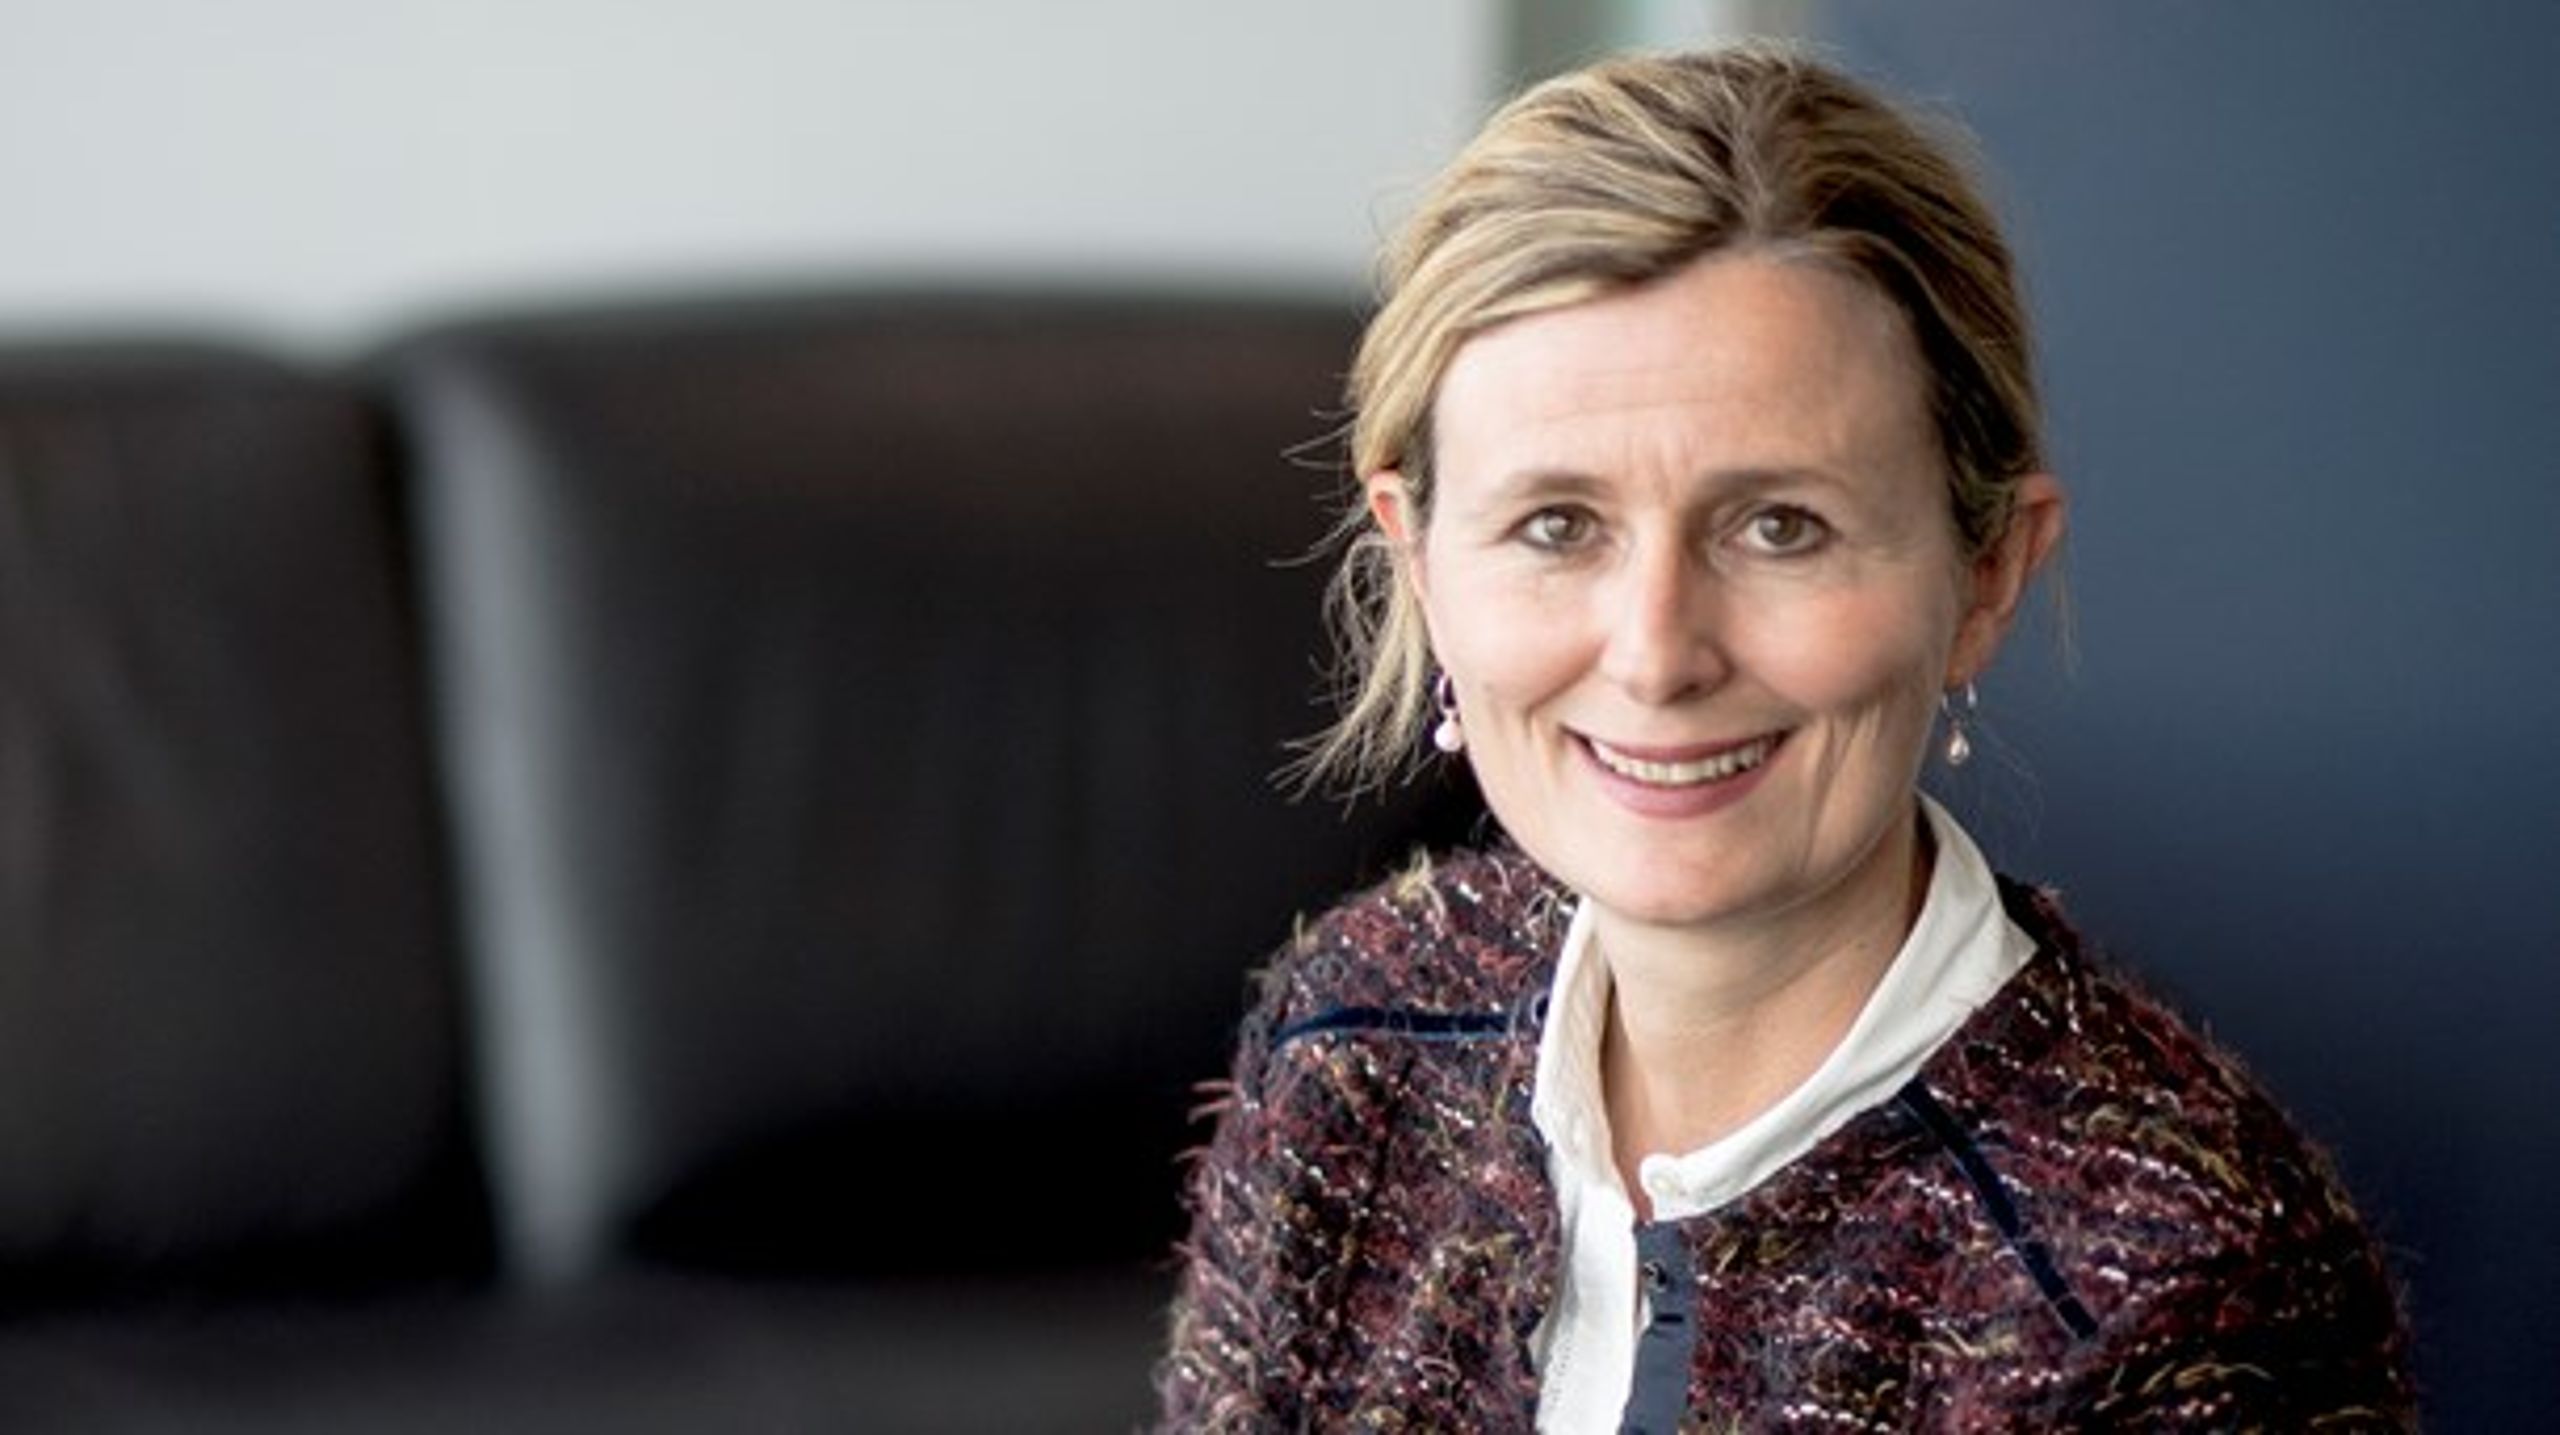 Pia Ahrenkilde Hansen bliver generaldirektør i EU-Kommissionen efter en årrække uden danskere i toppen af institutionen.